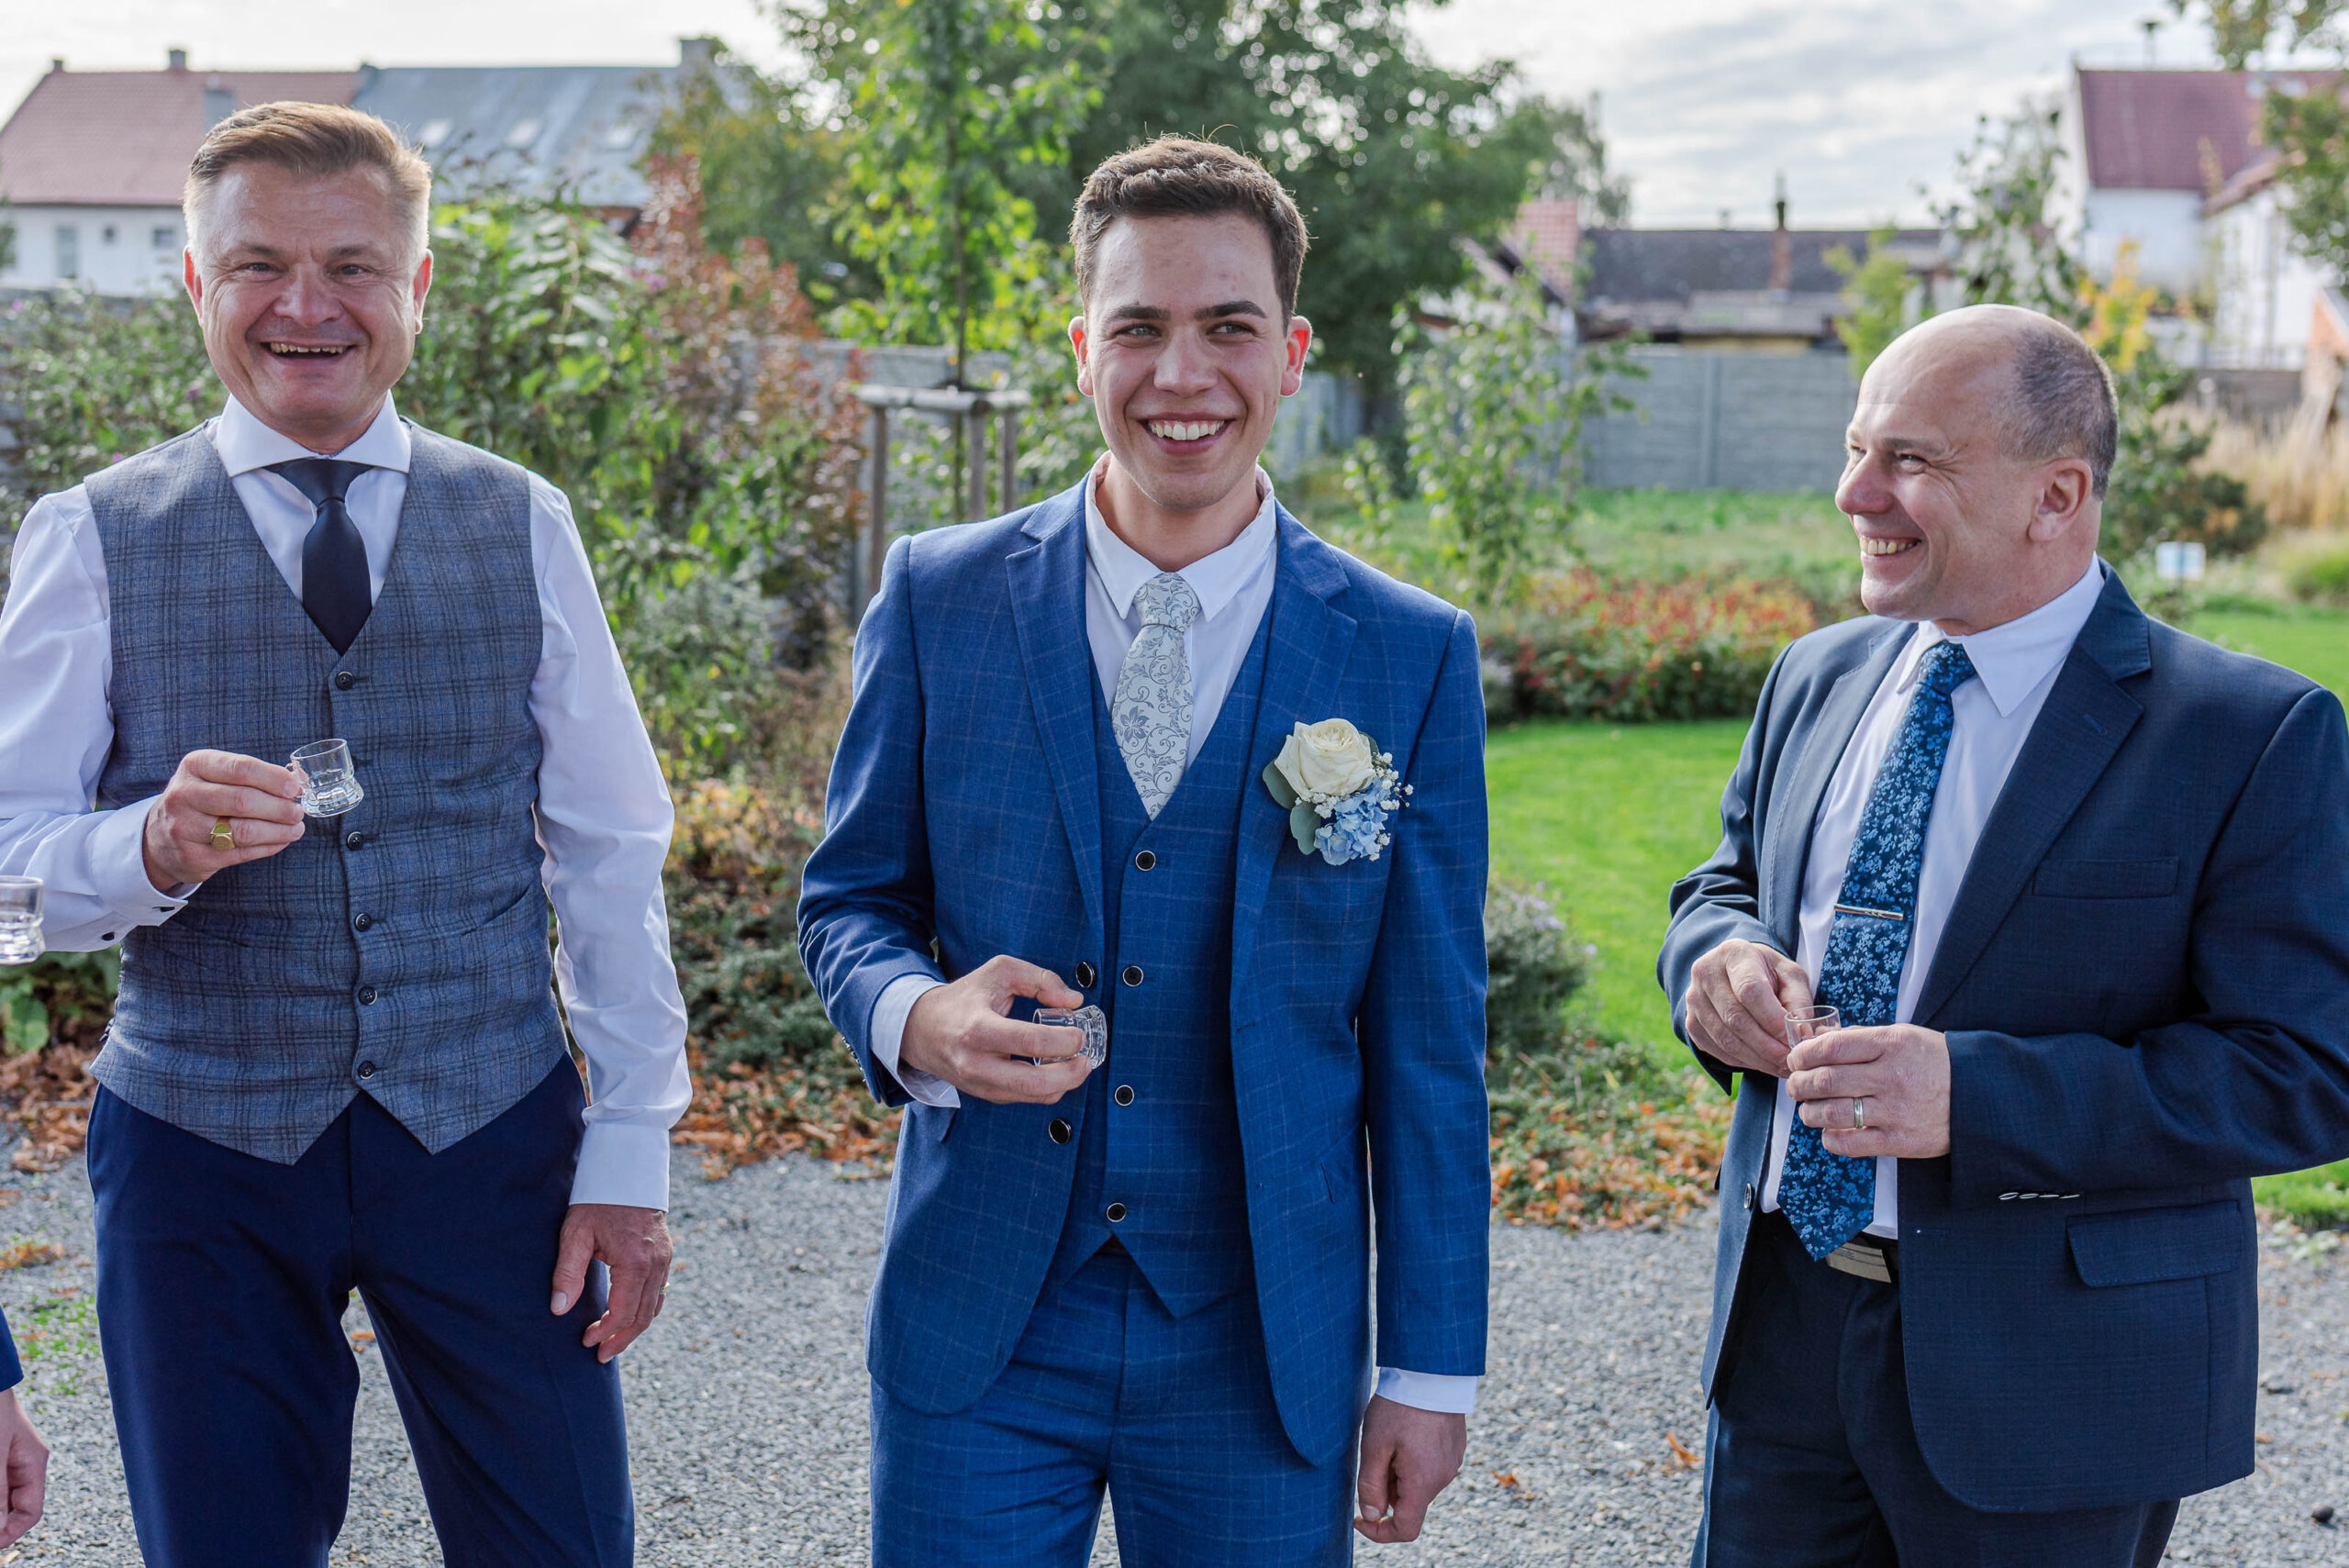 Svatební fotograf | svatba s přáteli a rodinou, Zlínsko